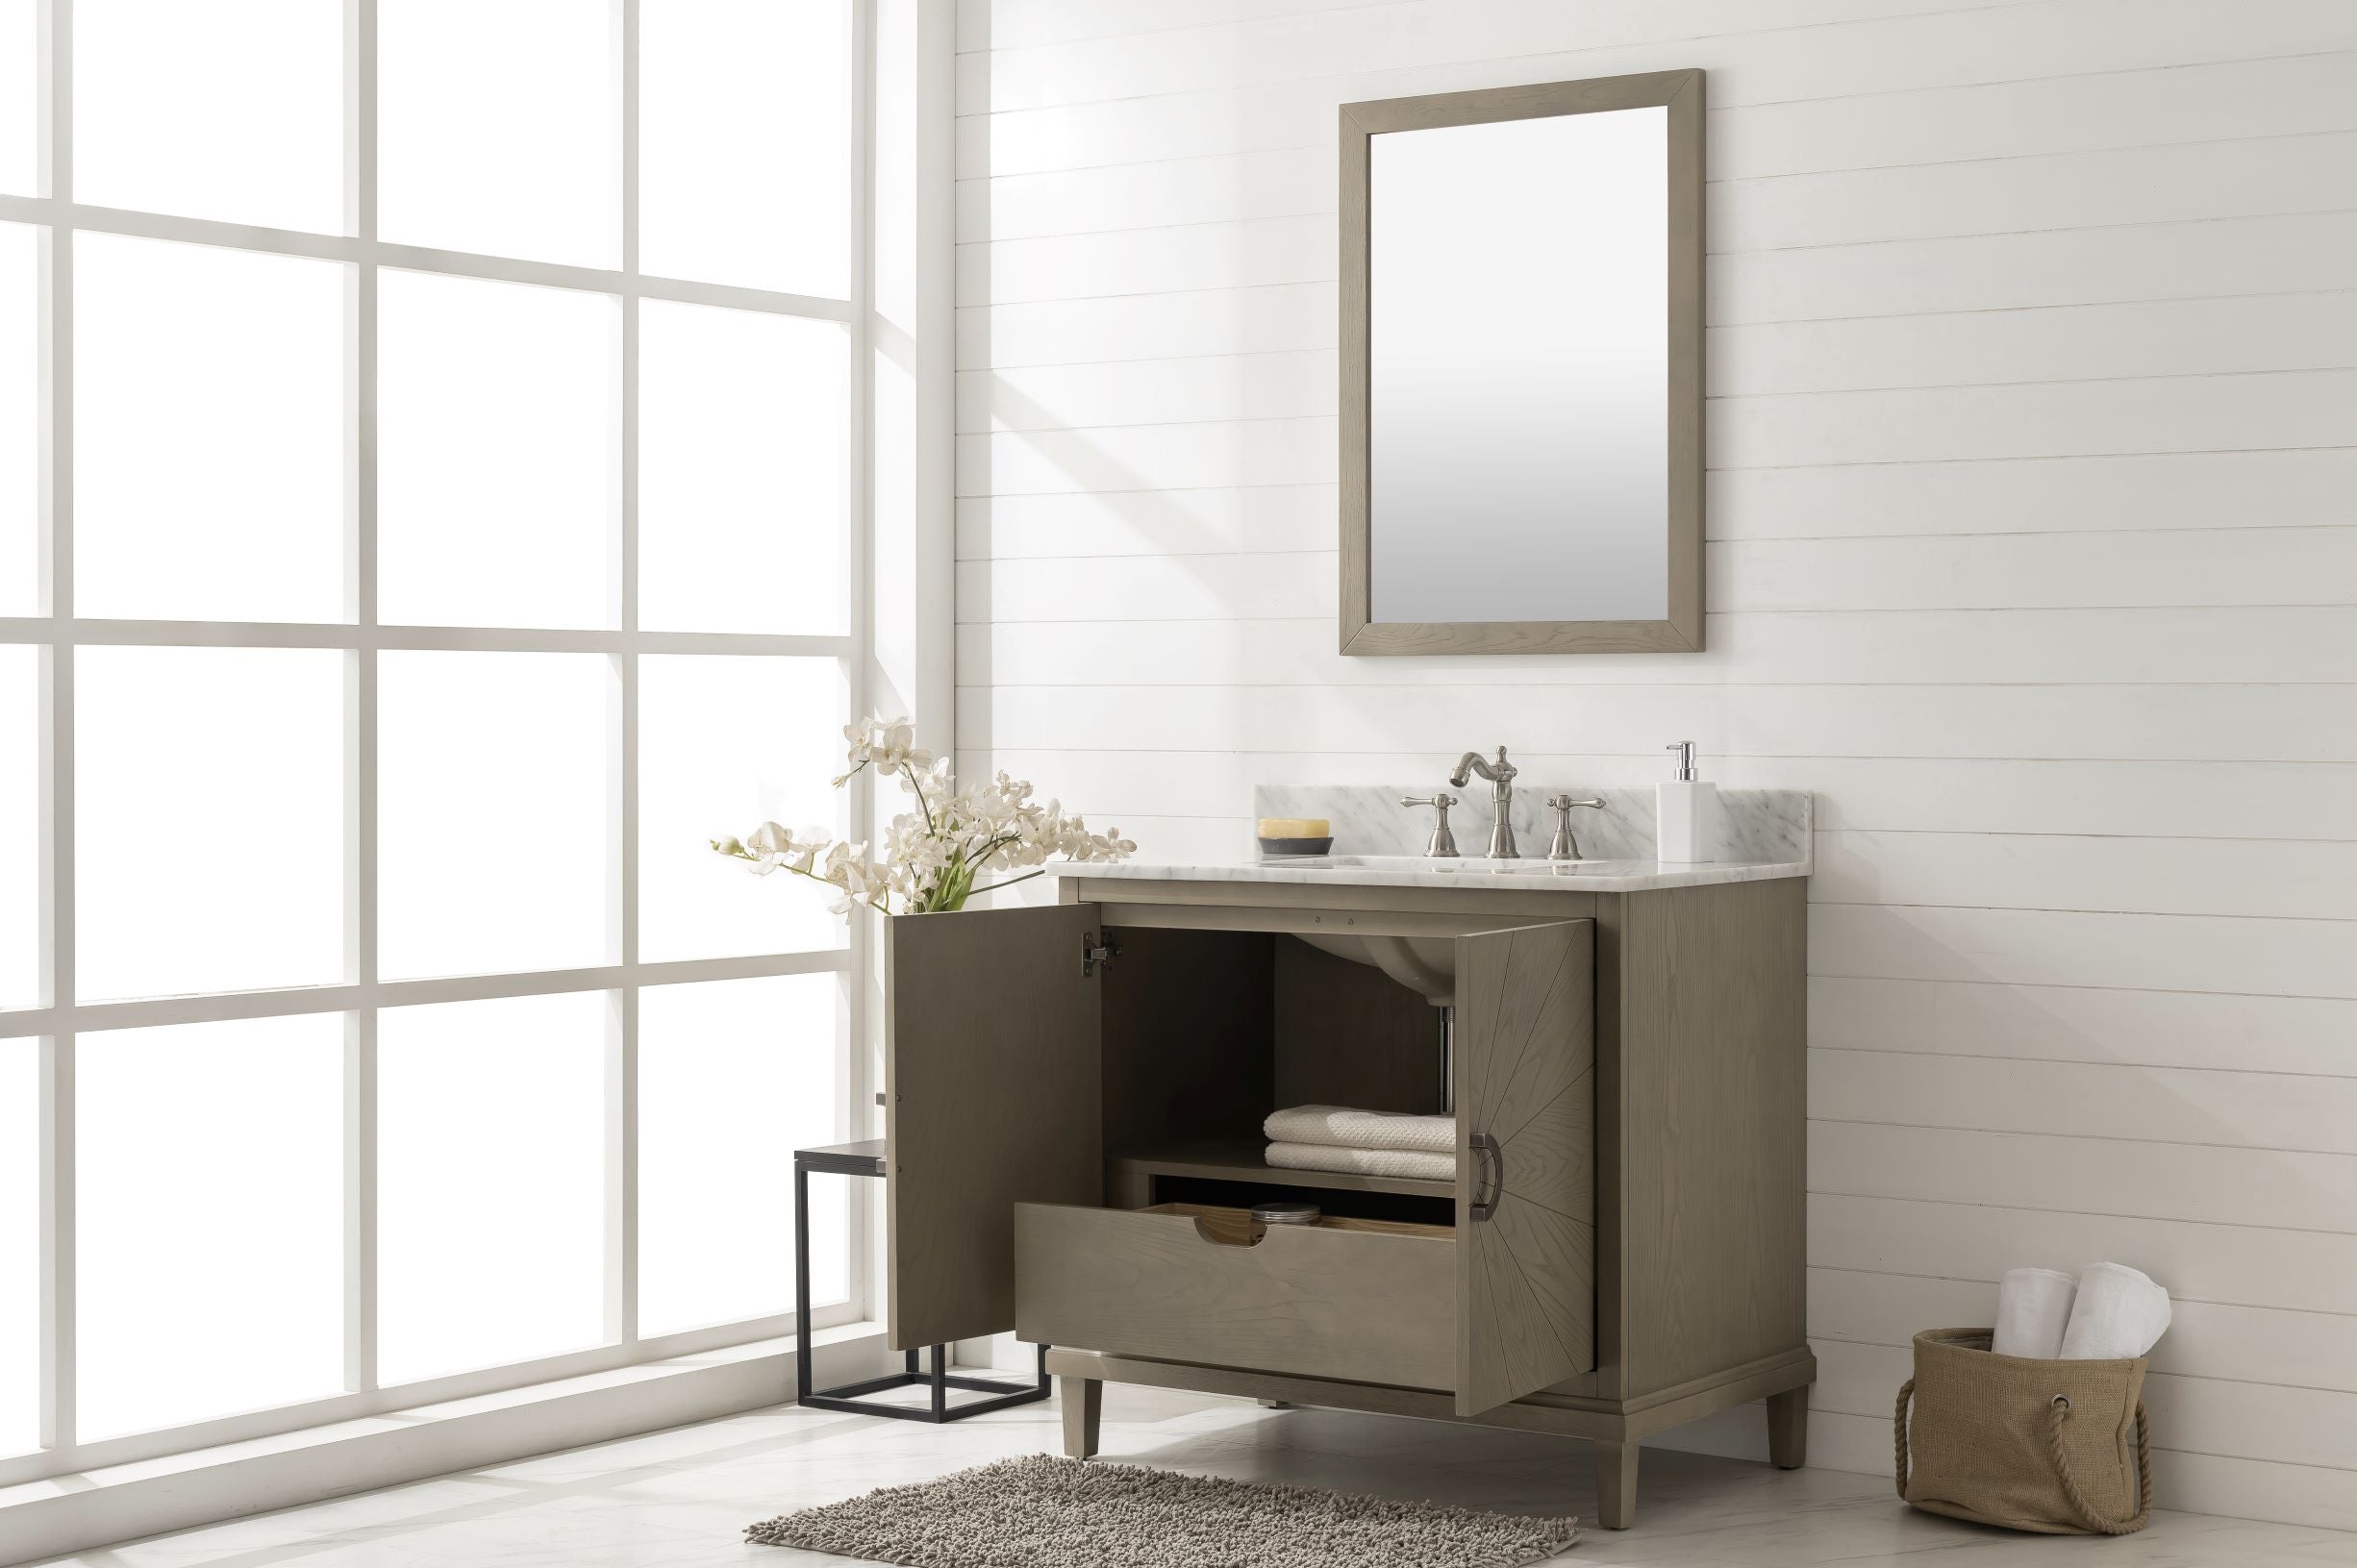 Legion Furniture 36" Bathroom Vanity & Sink WLF7040-36-AGO (36" x 21" x 33")